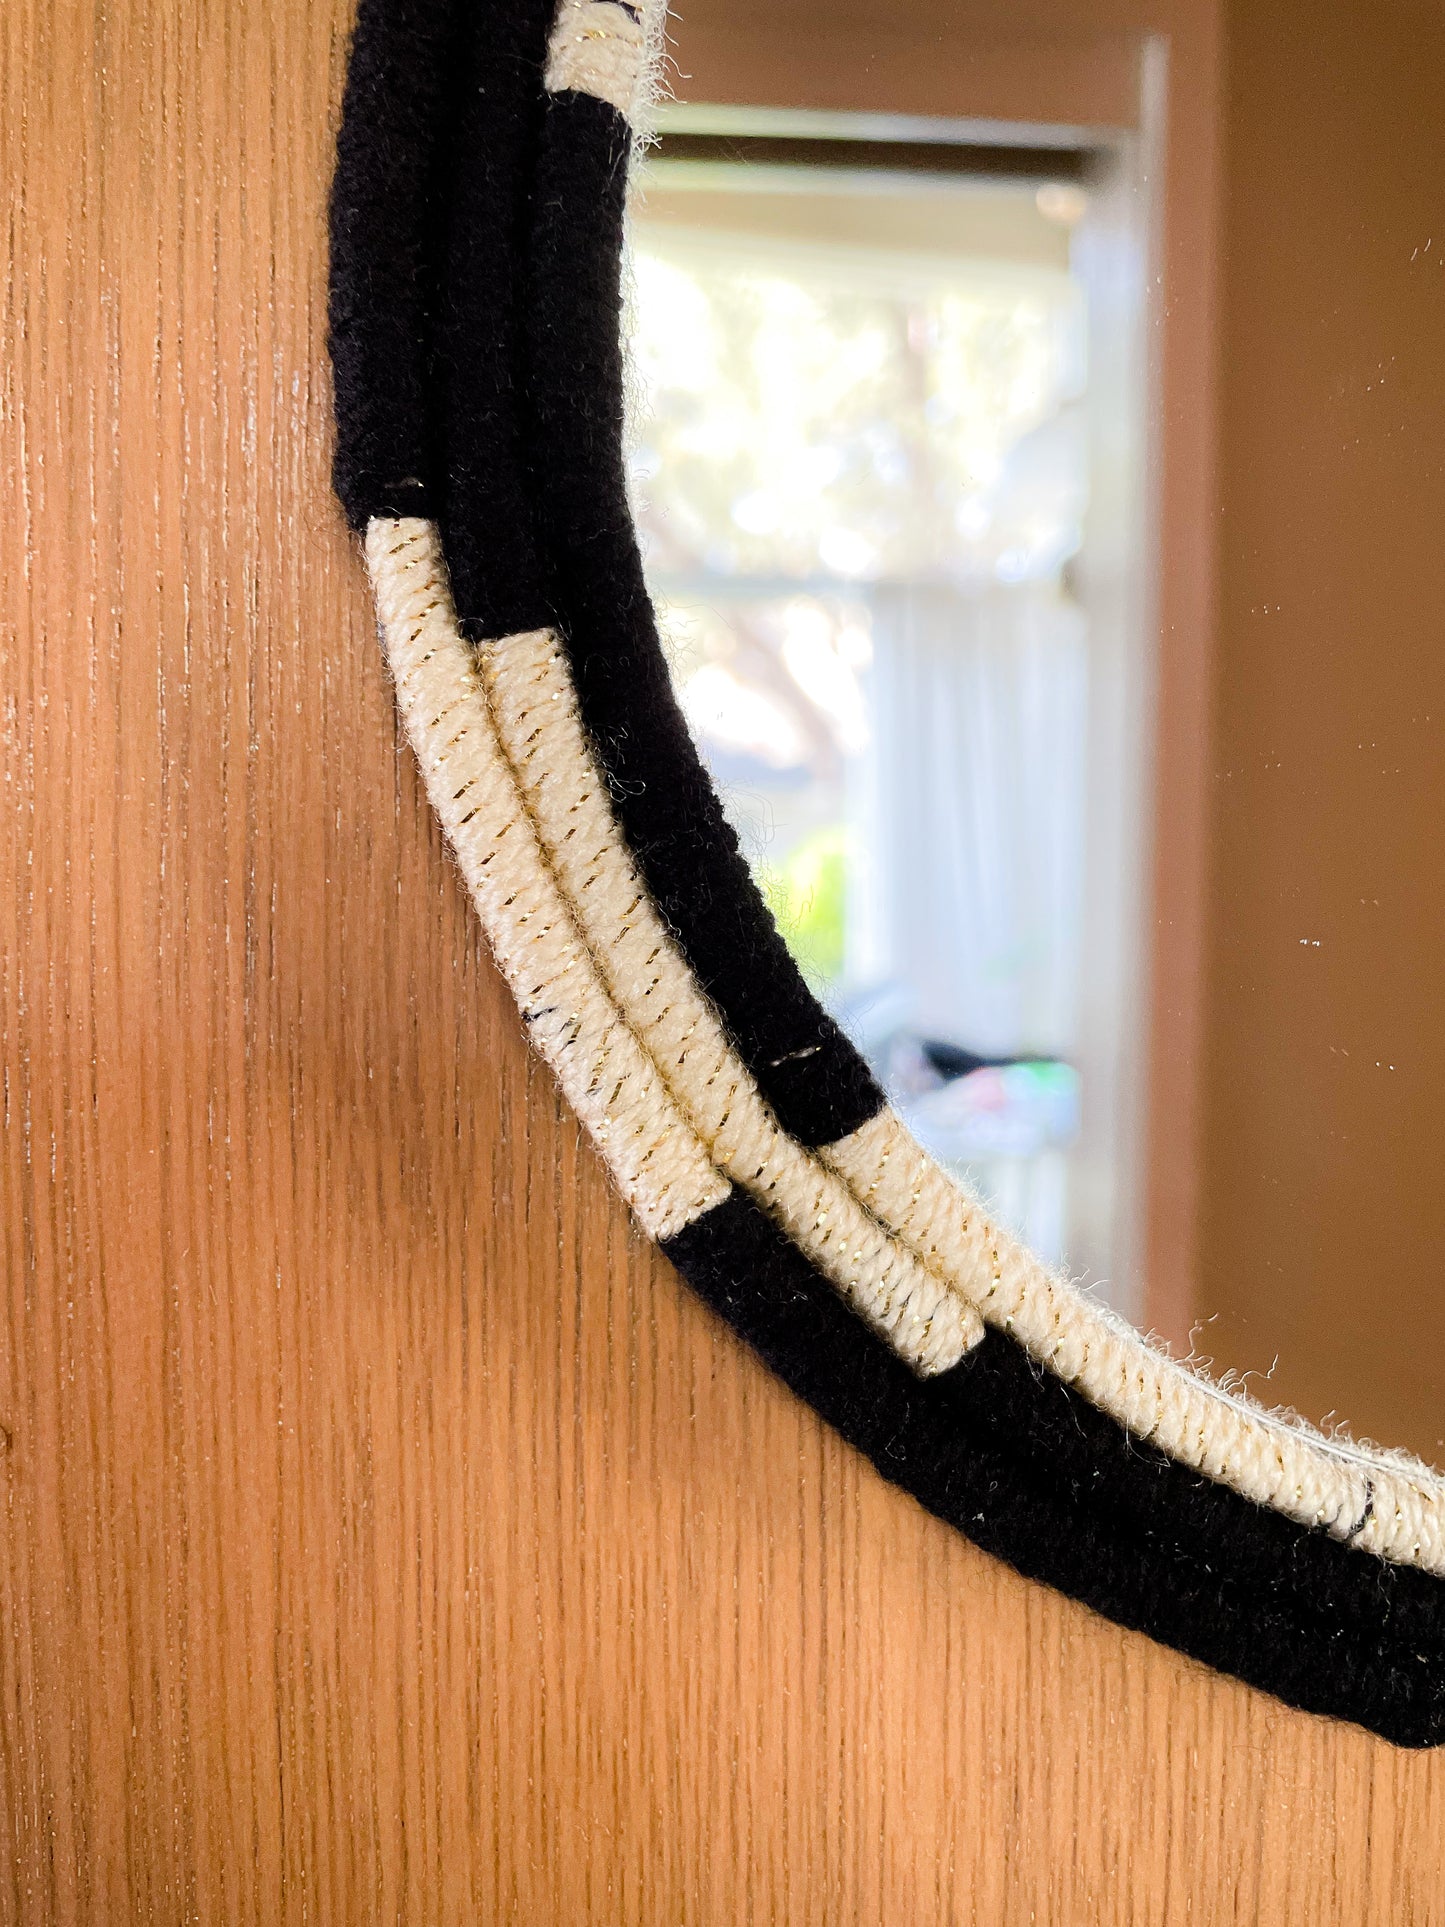 Black and Cream/Gold Rope Mirror - Suzari Designs Home Decor